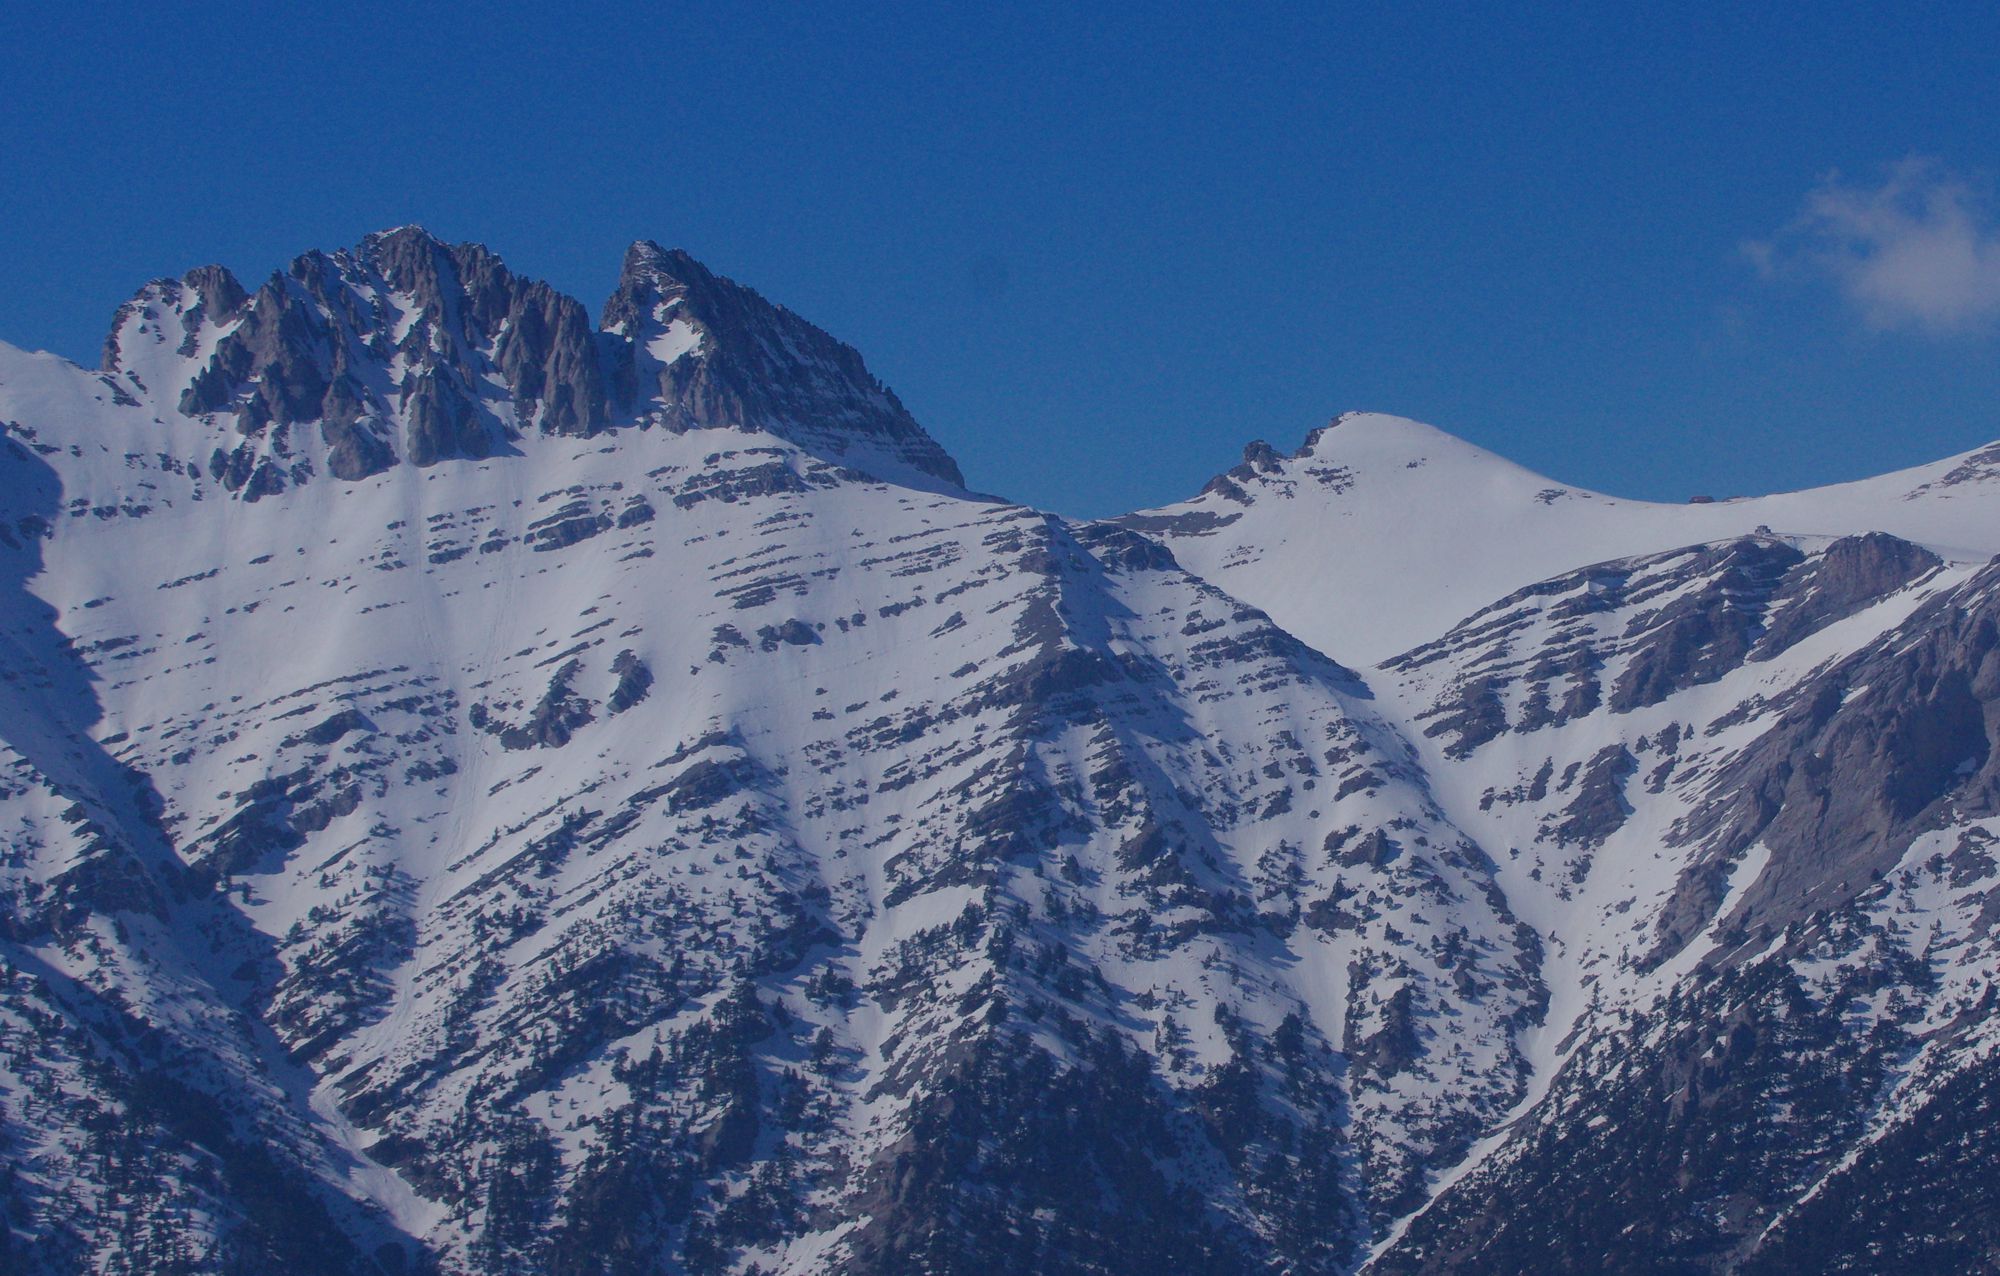 Εθνικός Δρυμός Ολύμπου: Οι ψηλότερες κορυφές του Ολύμπου και το Οροπέδιο των Μουσών από τα νότια